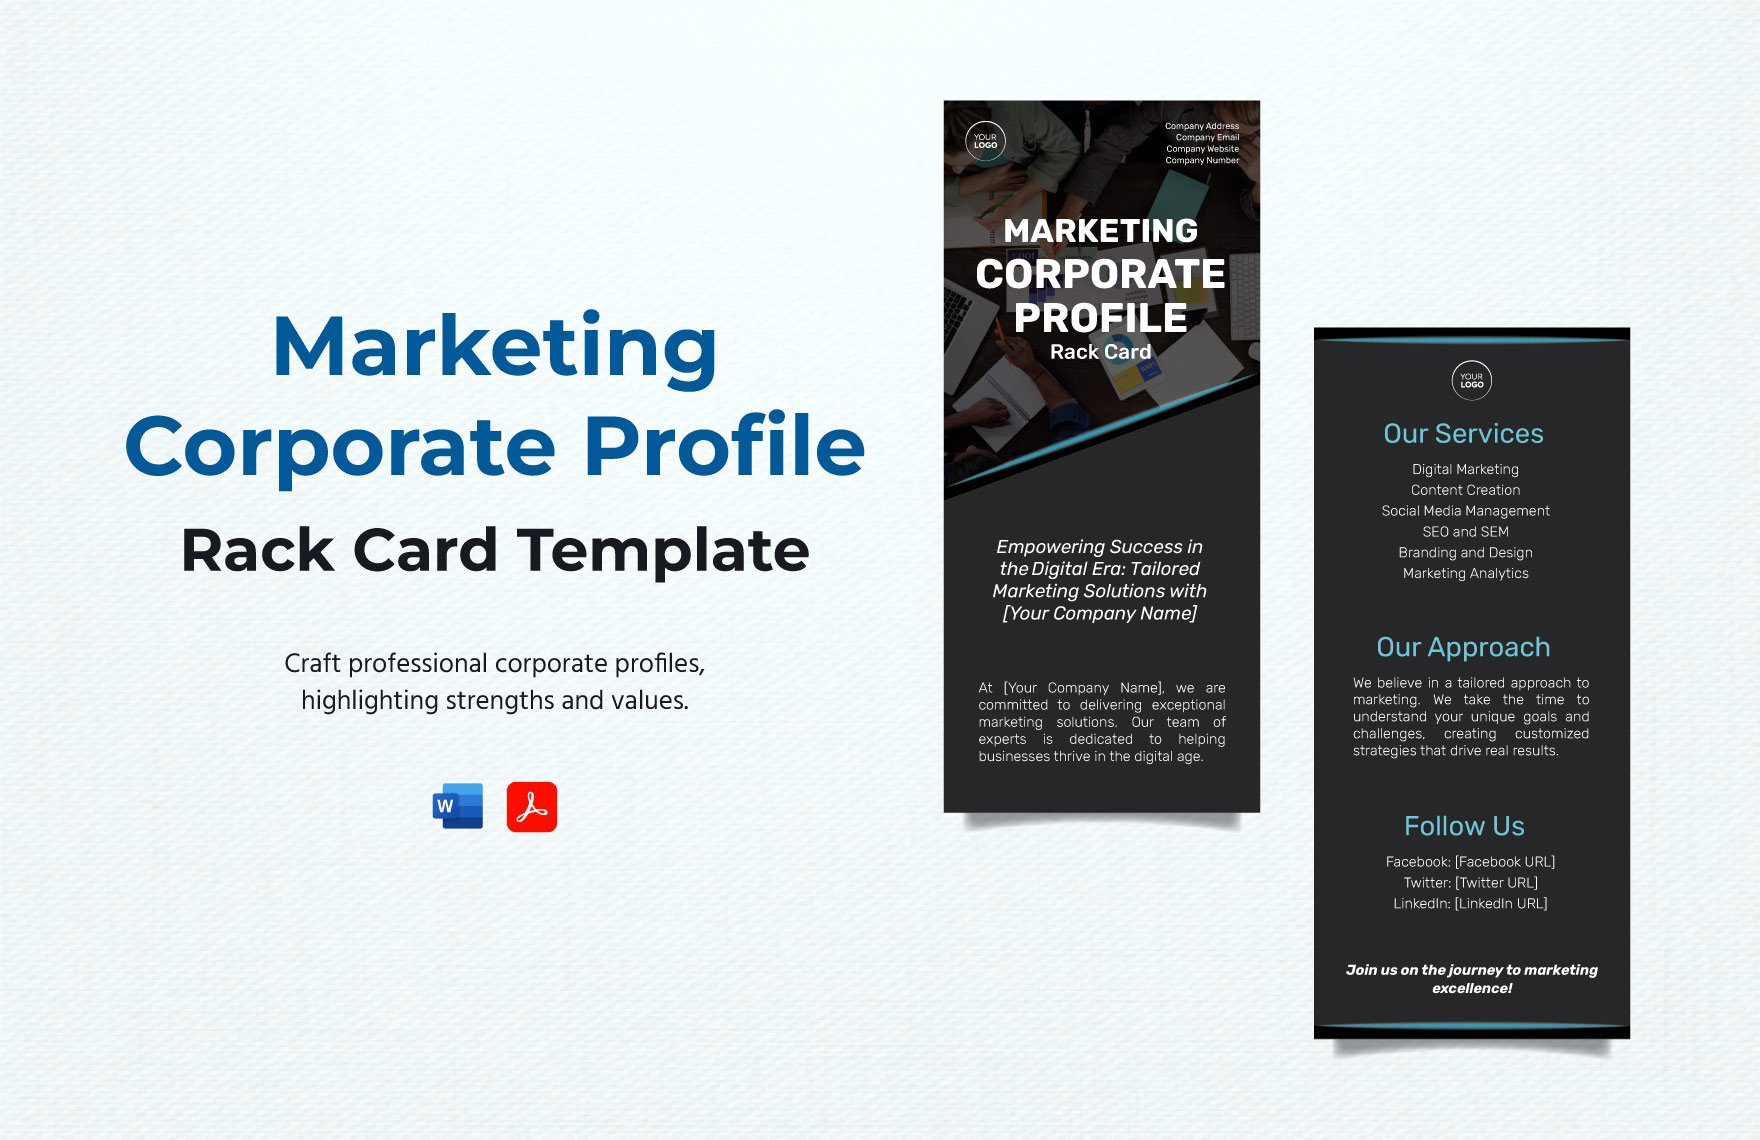 Marketing Corporate Profile Rack Card Template